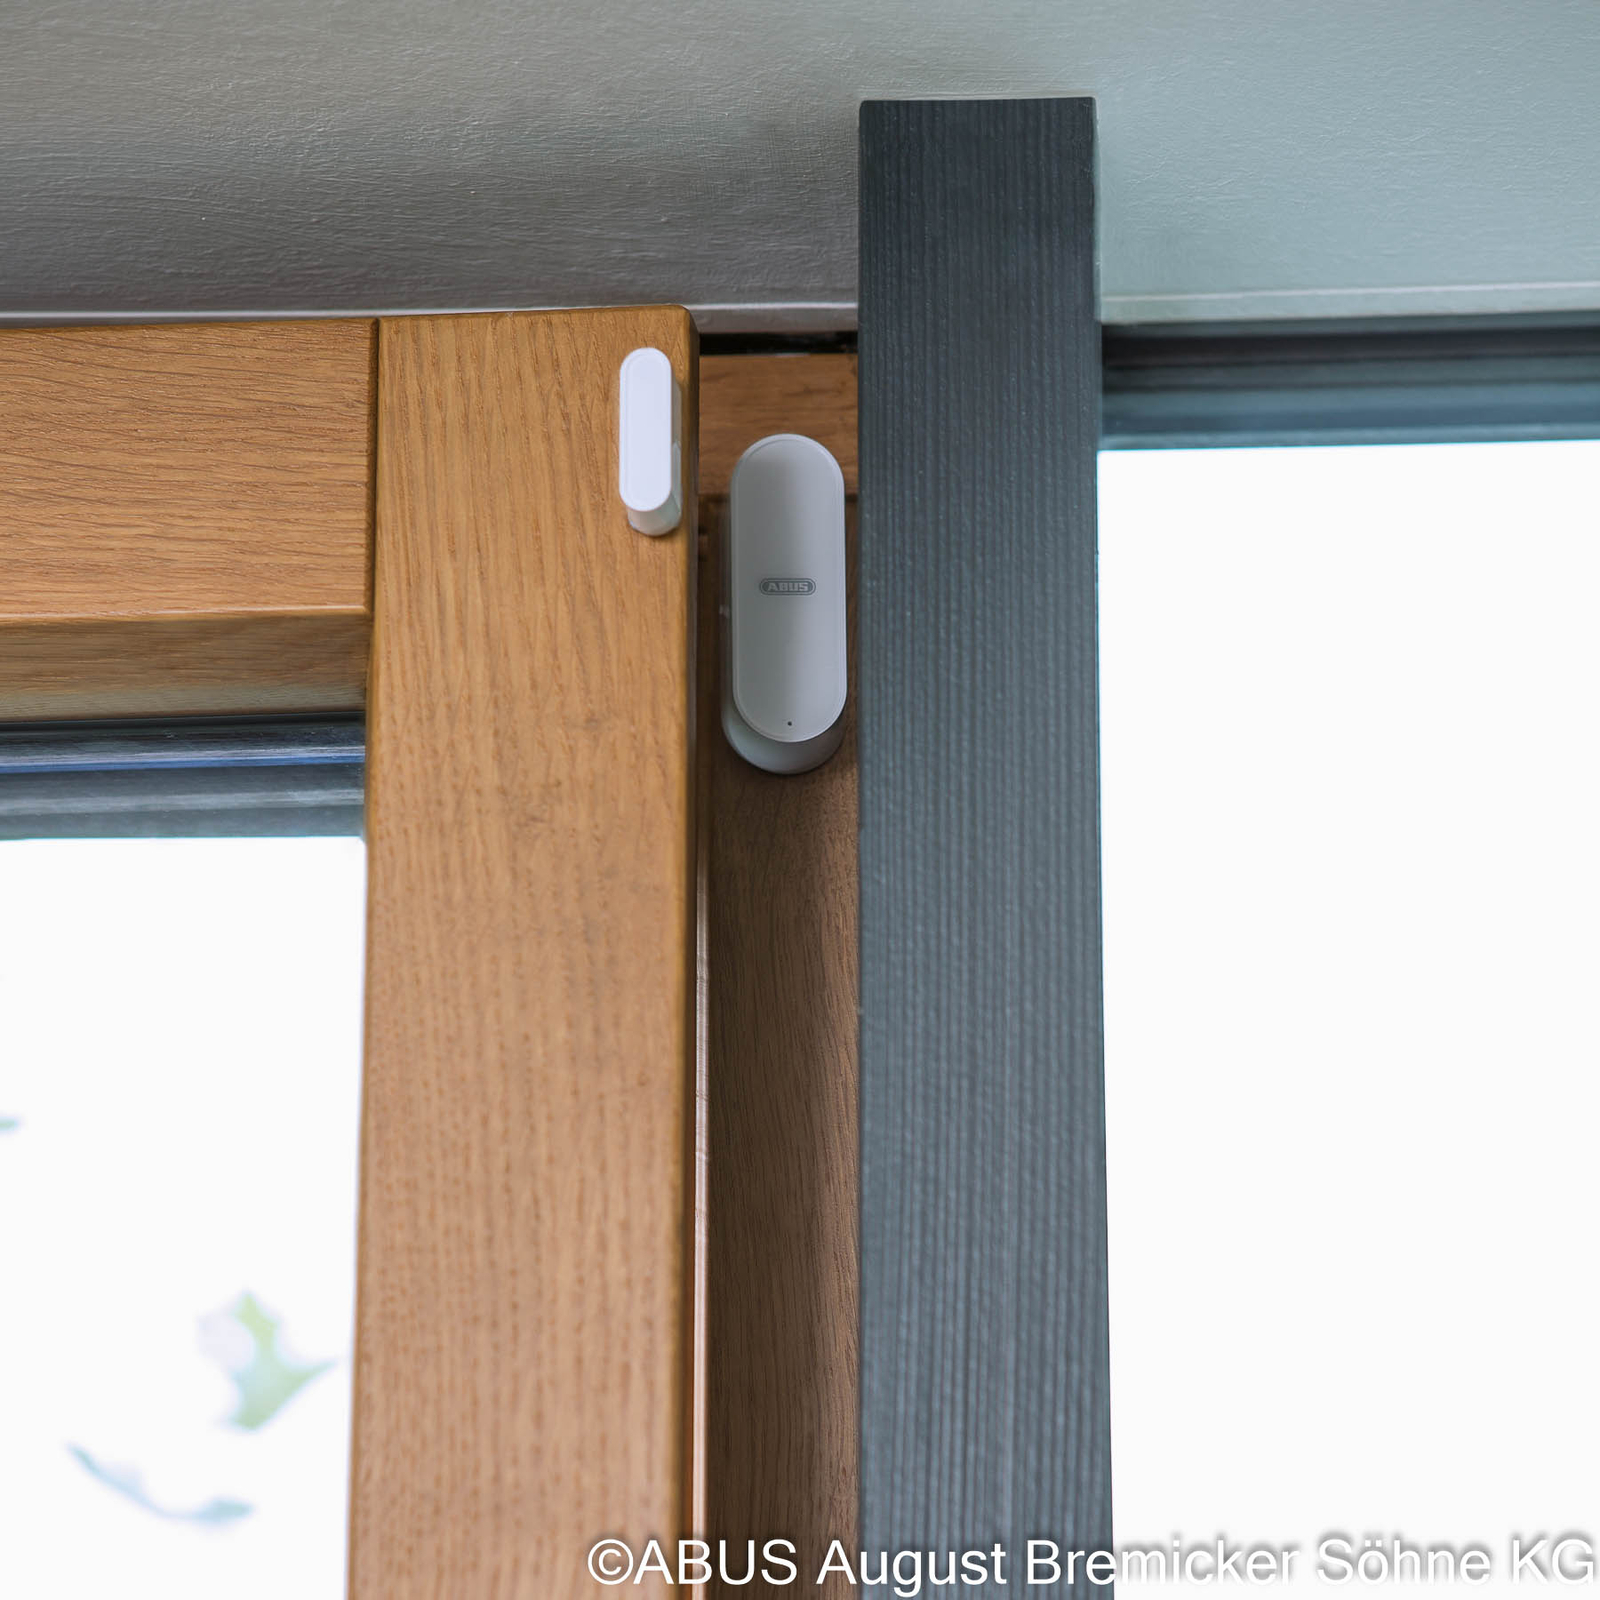 Bezprzewodowy kontakt drzwiowy/okienny Wav firmy ABUS